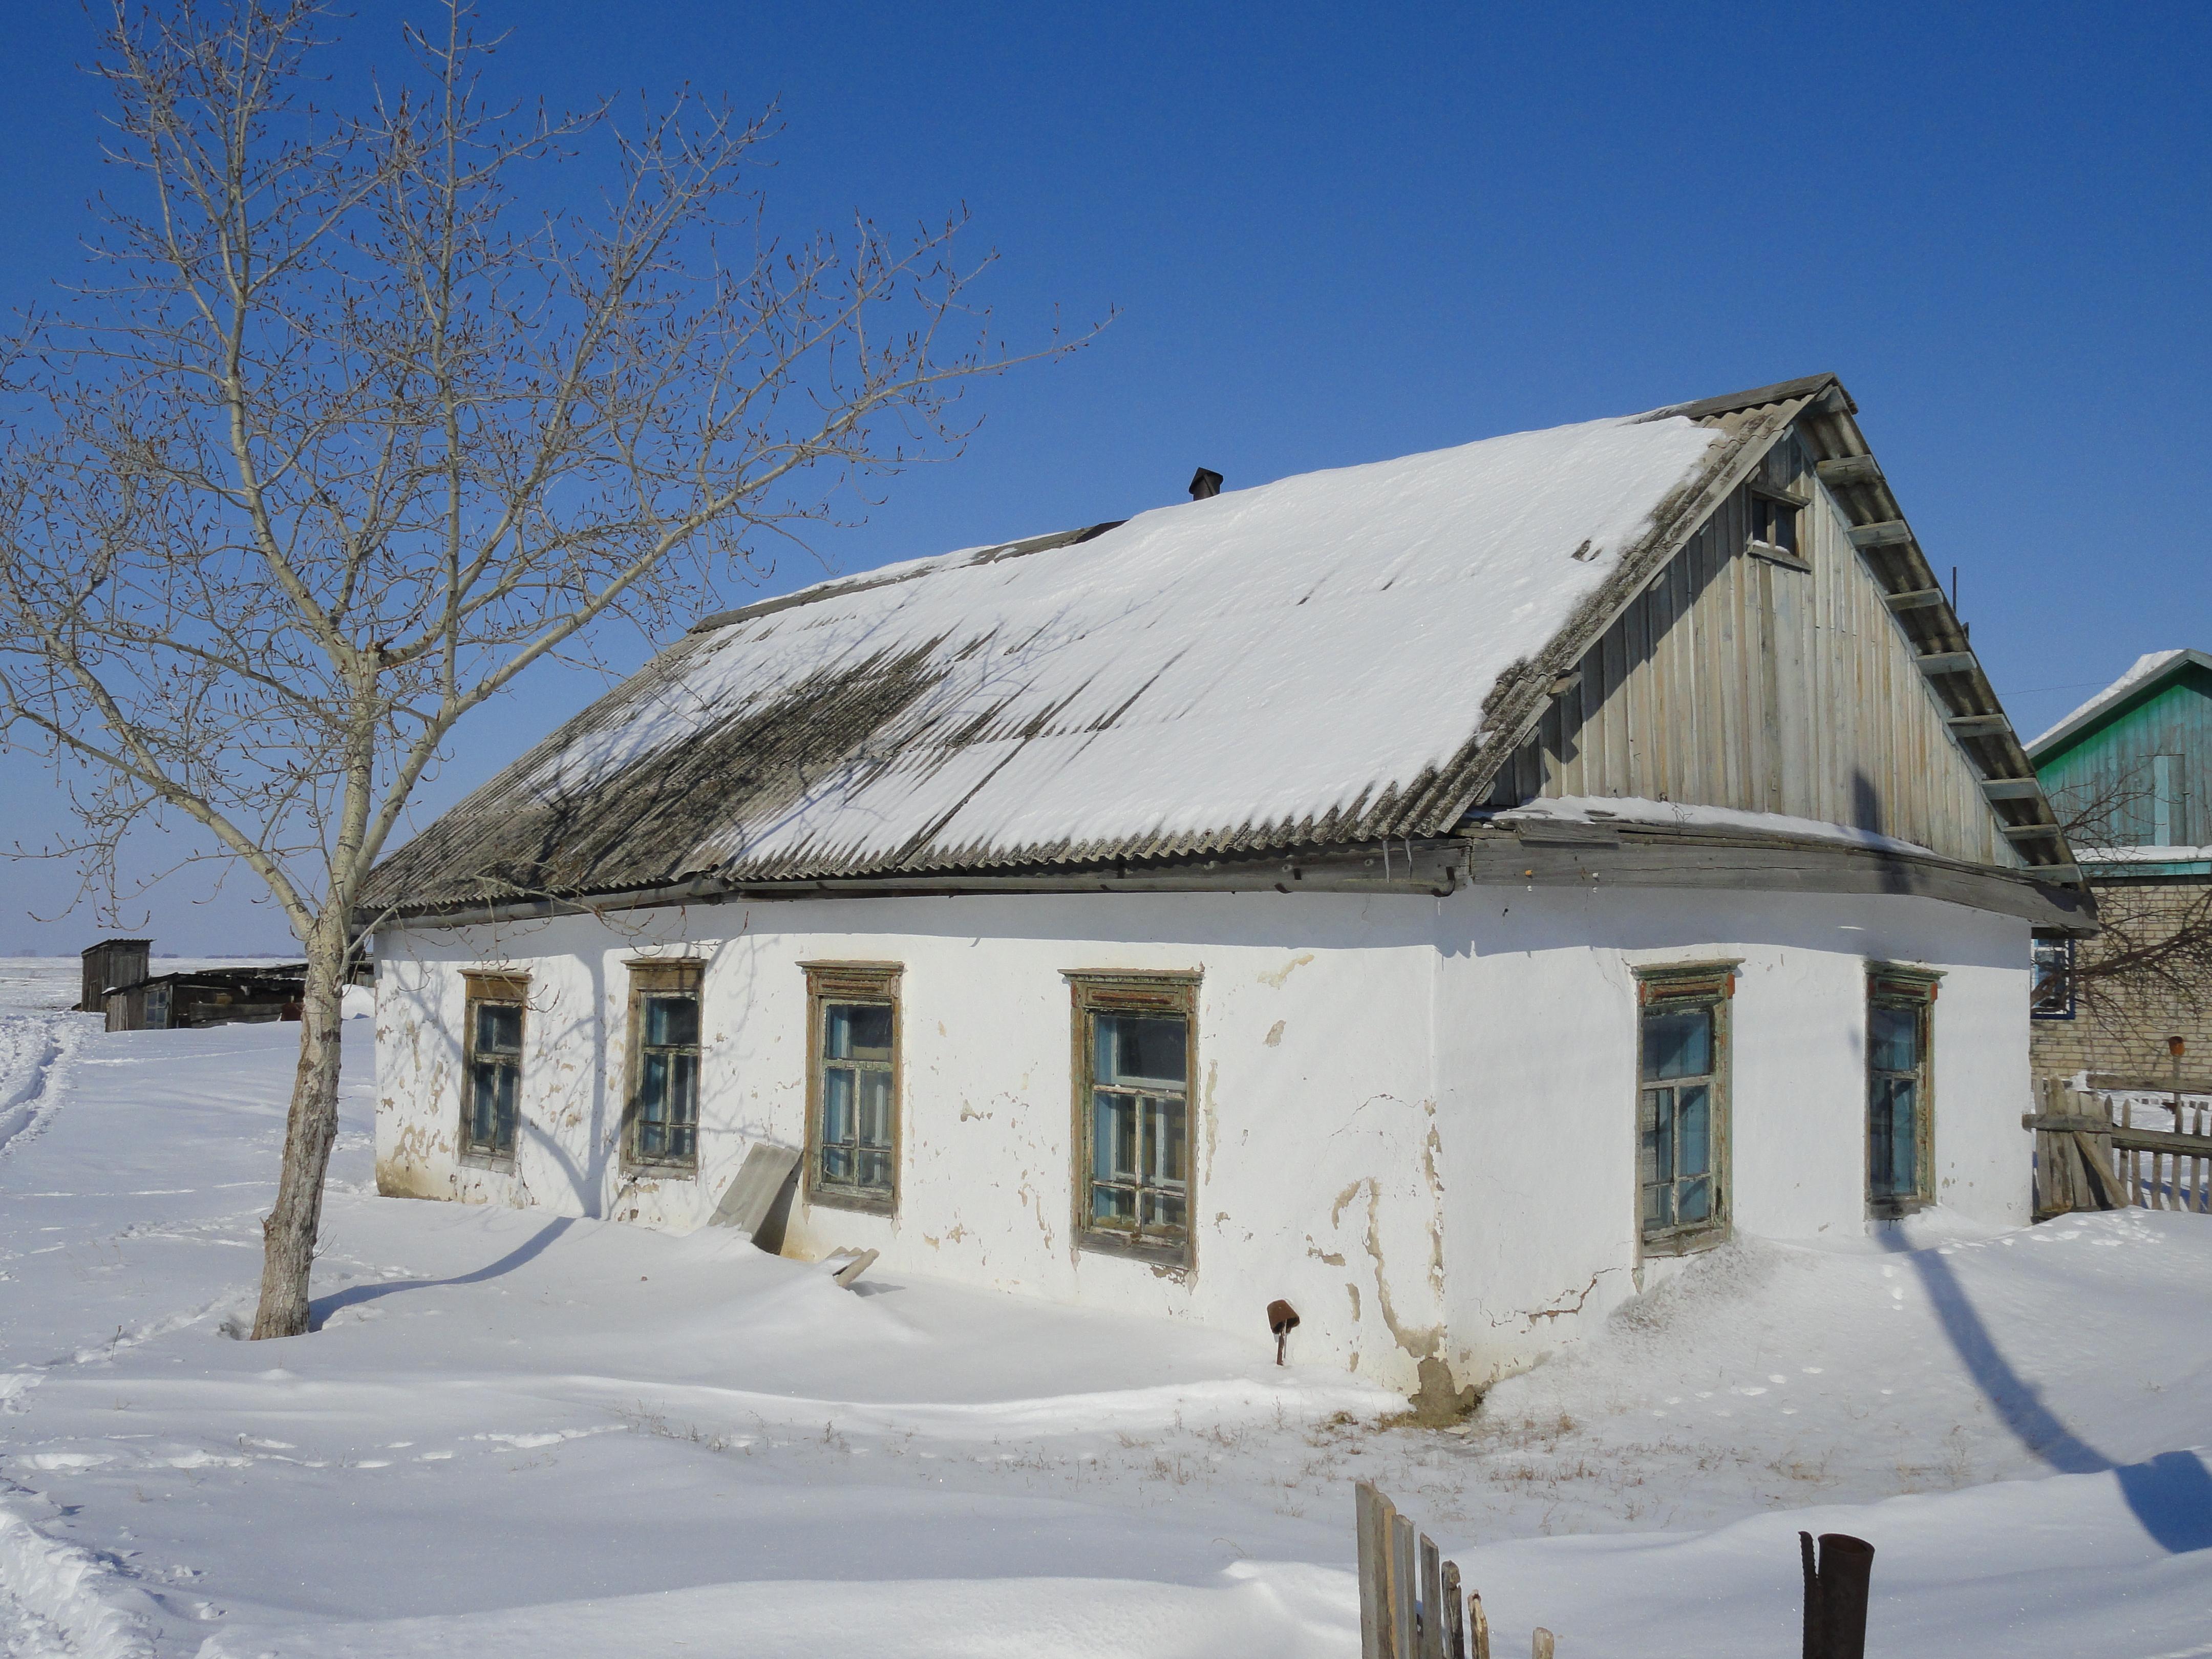 Самый старый дом в деревне, музейный экспонат, его возраст более 100 лет